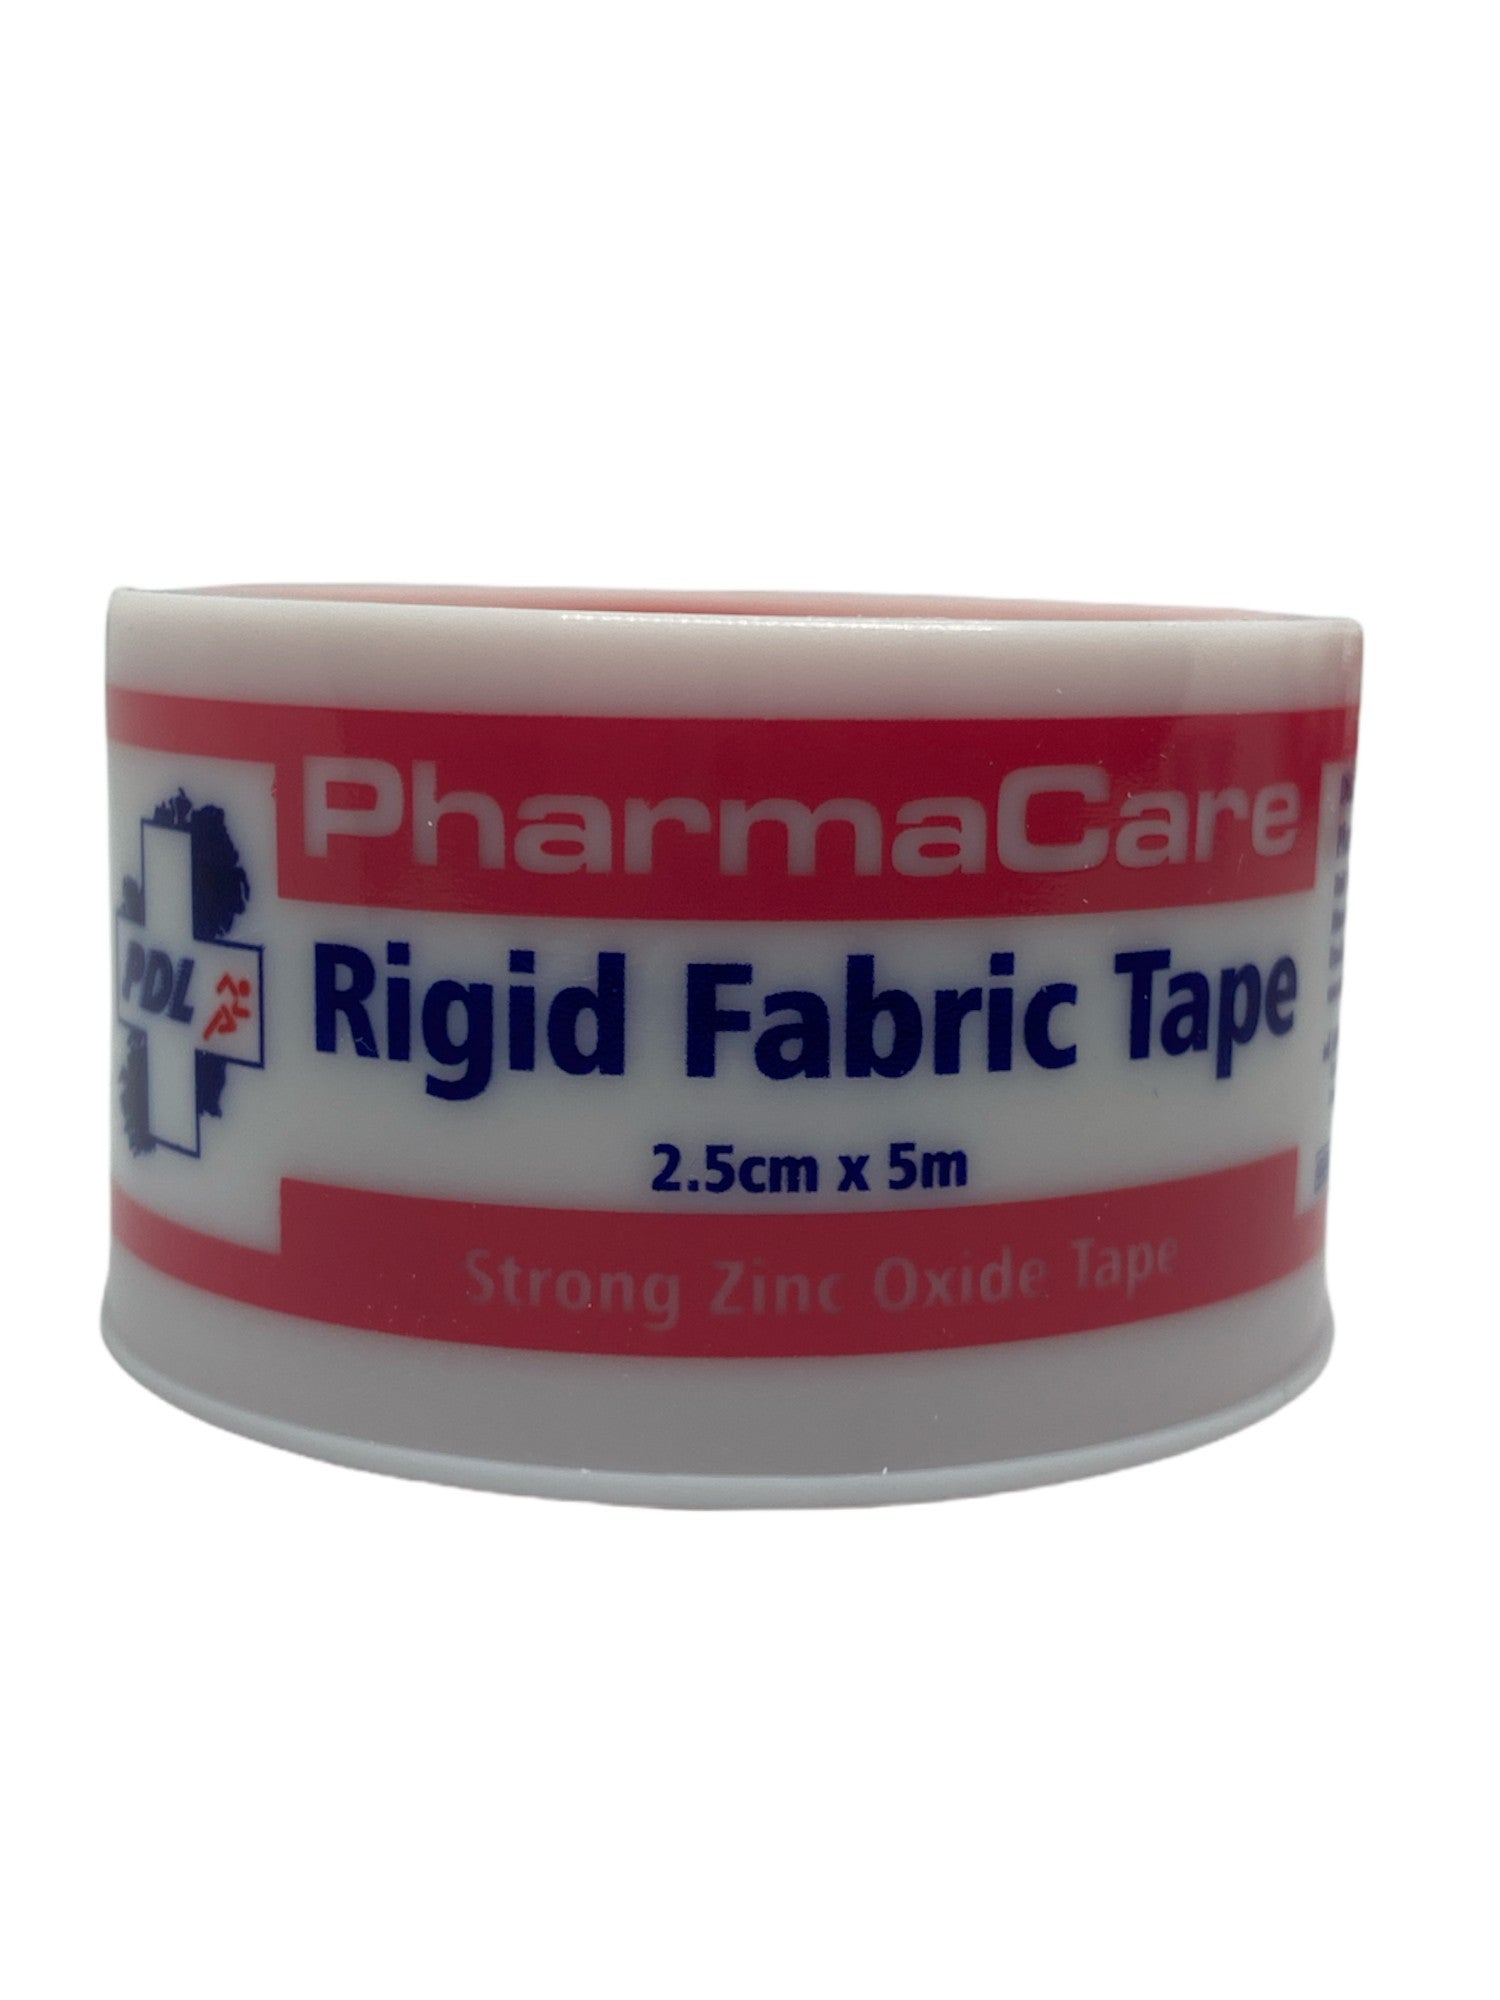 Pharmacare Rigid Fabric Tape 2.5cm x 5m